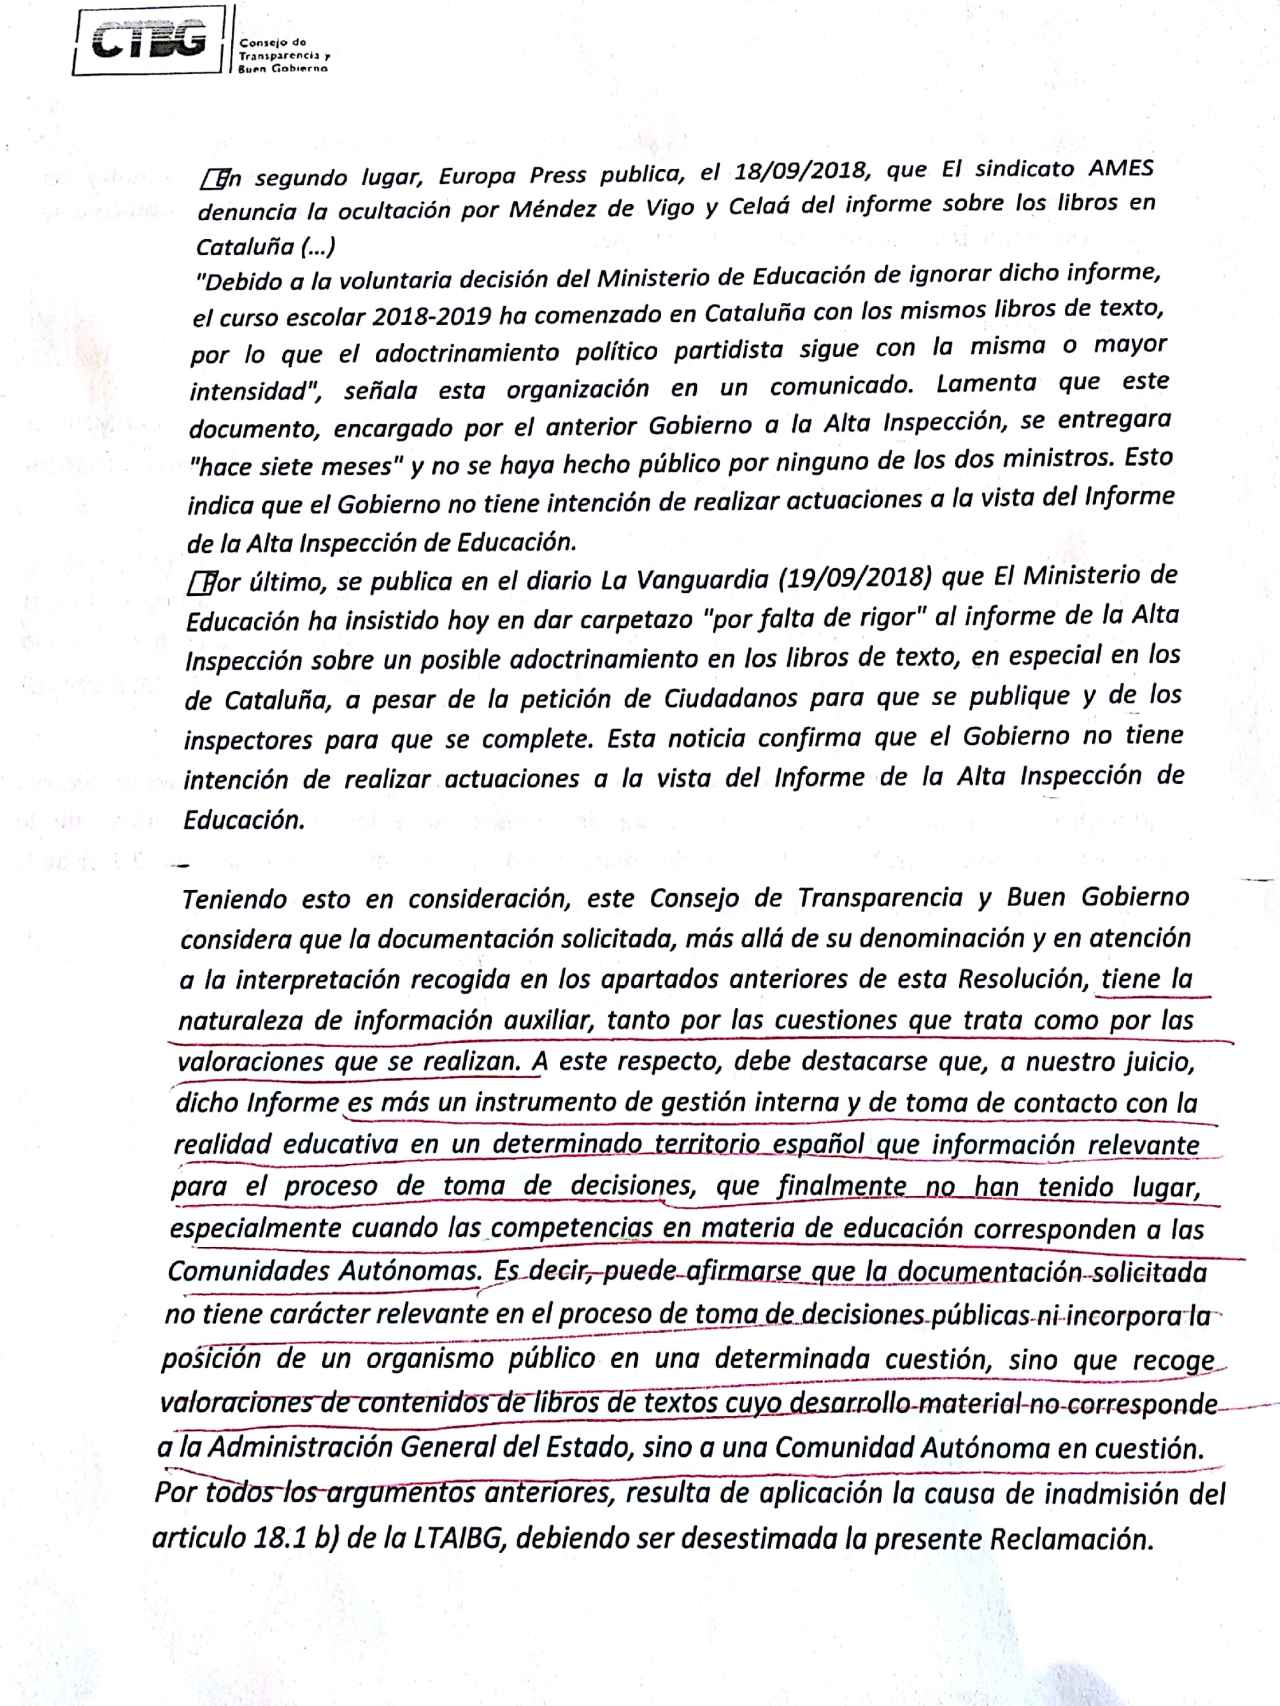 Inadmisión de la solicitud de Isaac Ibáñez ante el Consejo de Transparencia.